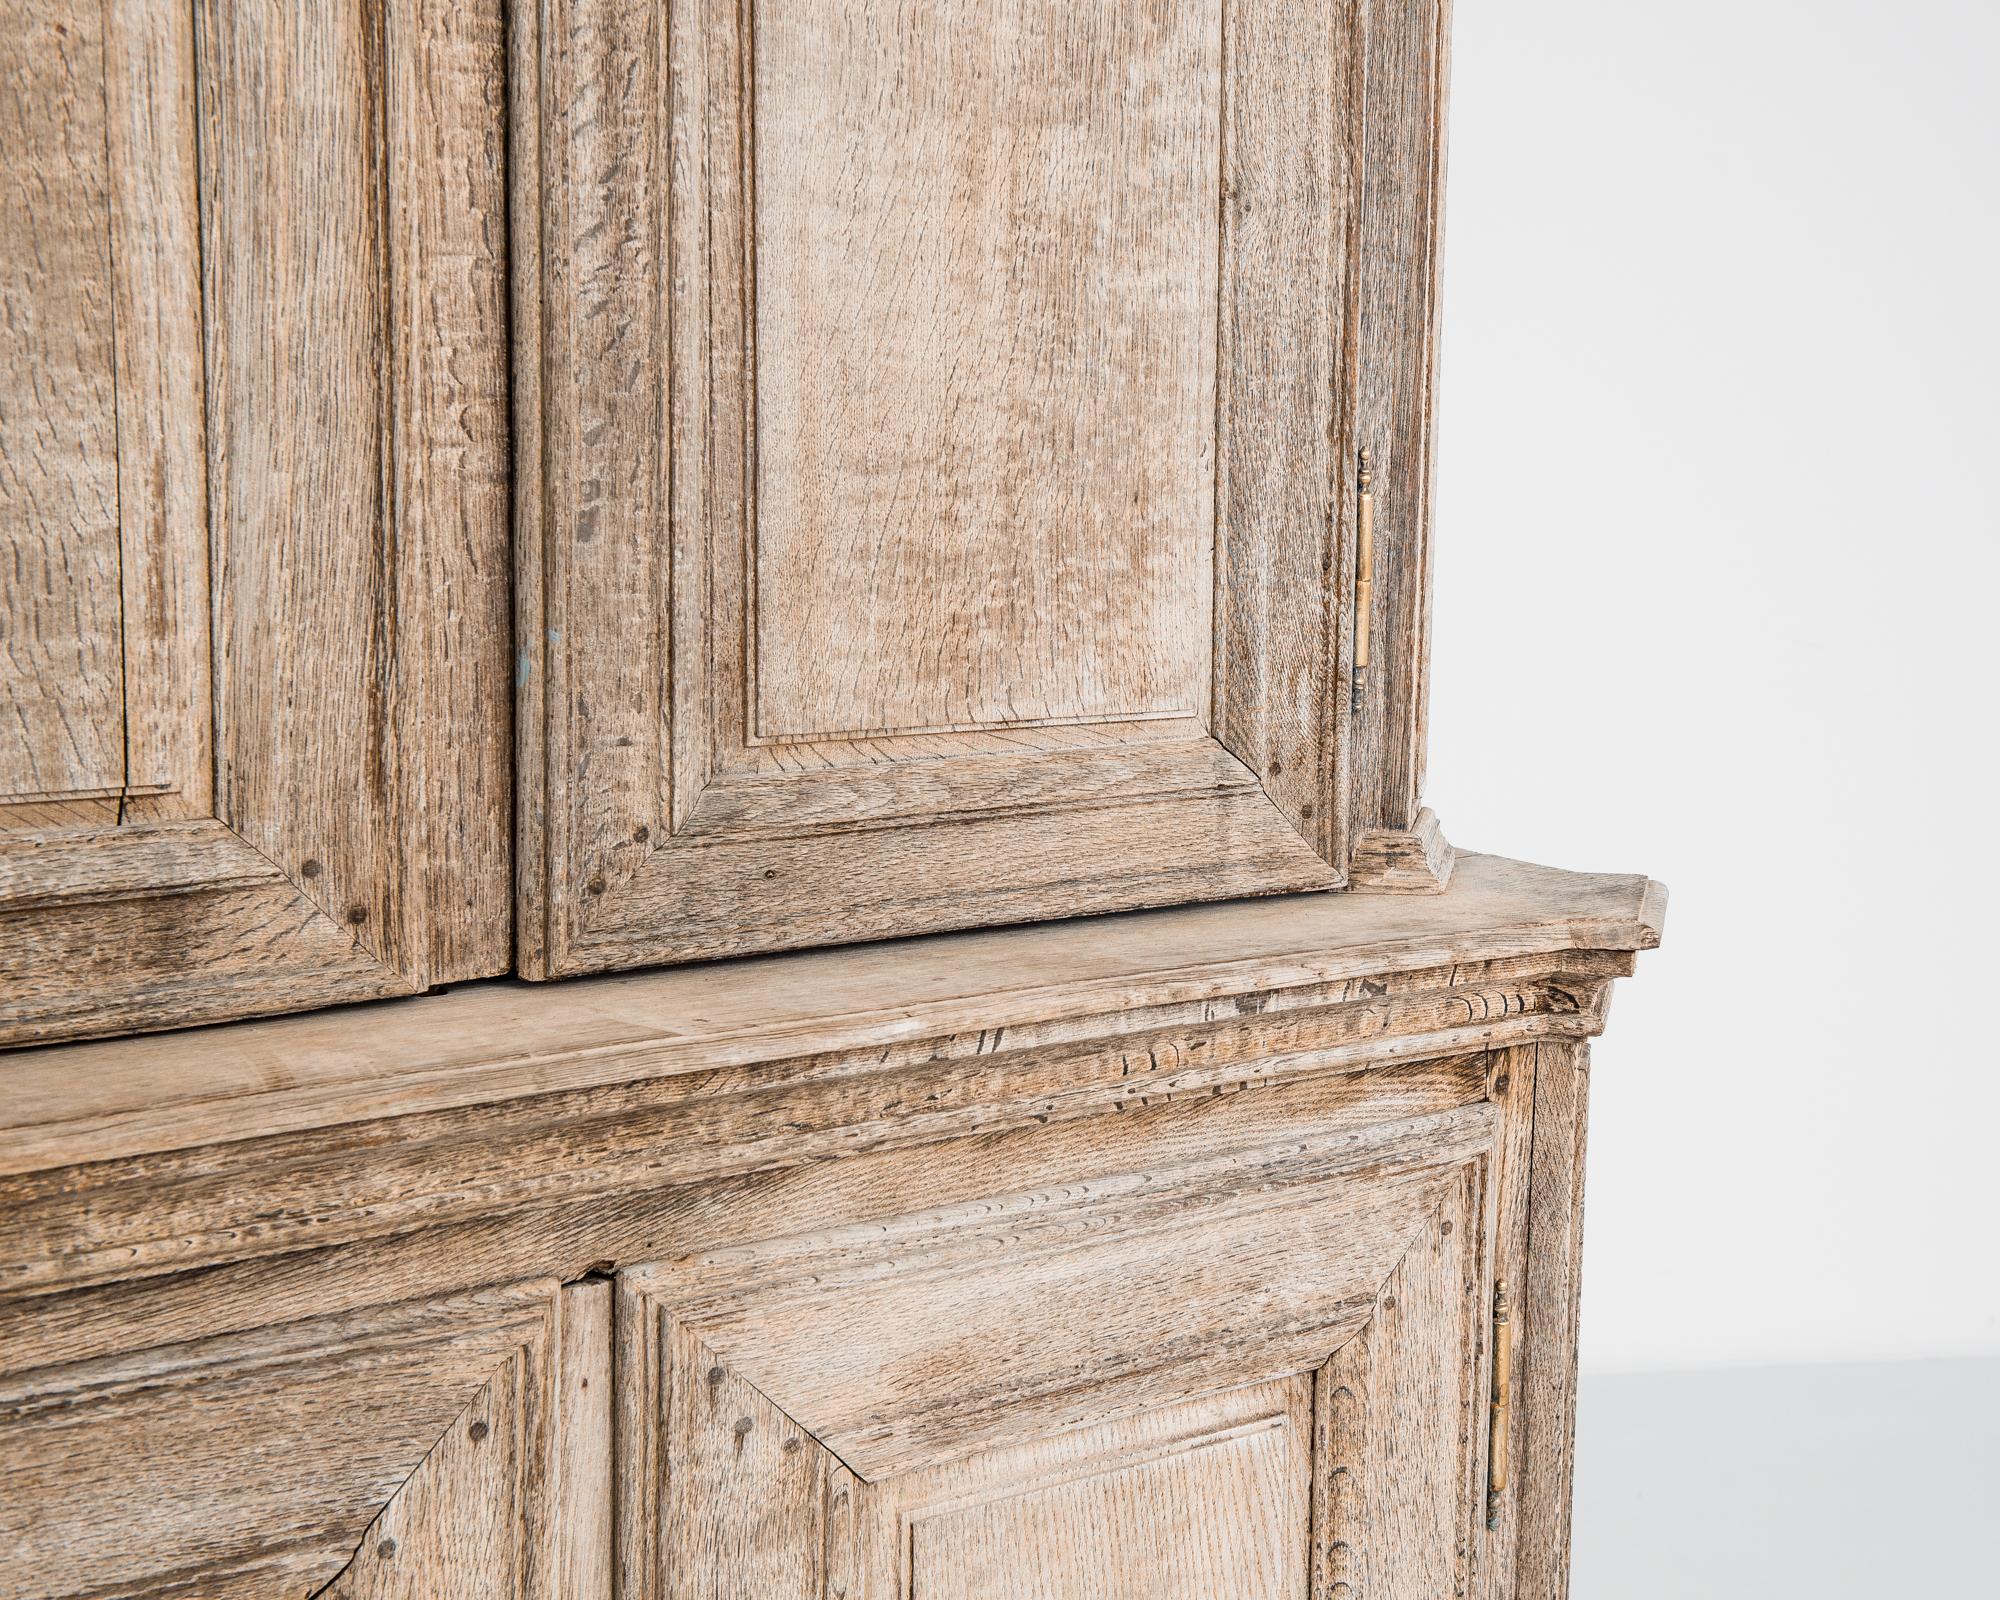 Entrez dans l'élégance intemporelle des années 1800 avec l'armoire française en chêne blanchi, une pièce exquise qui allie un design classique à un travail artisanal méticuleux. Ornée d'un plateau incurvé et de moulures couronnées, cette armoire